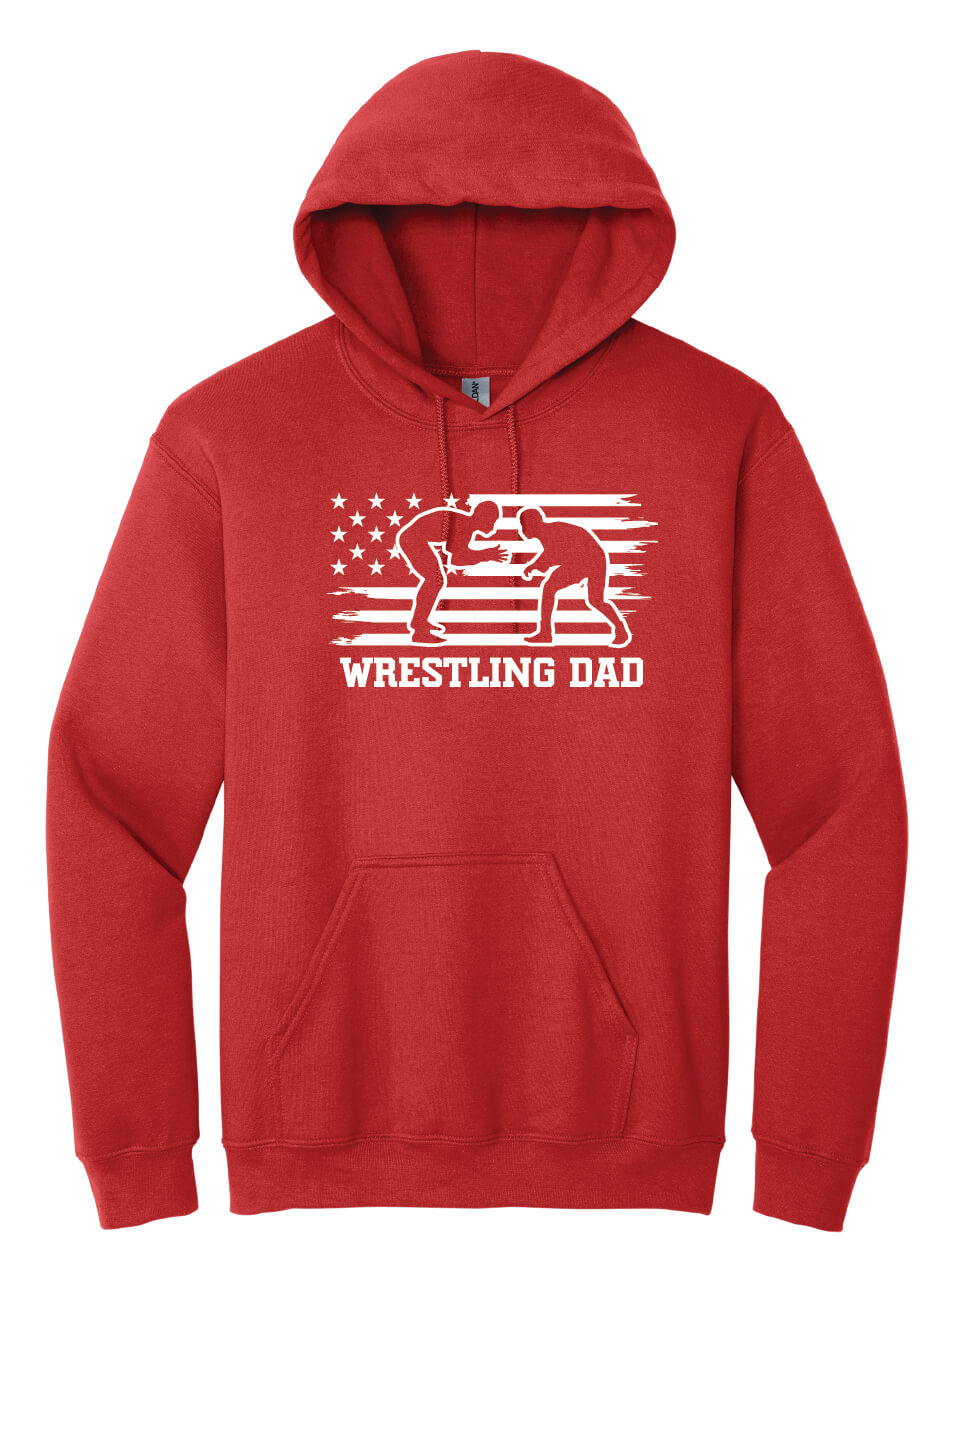 Wrestling Dad Hoodie red